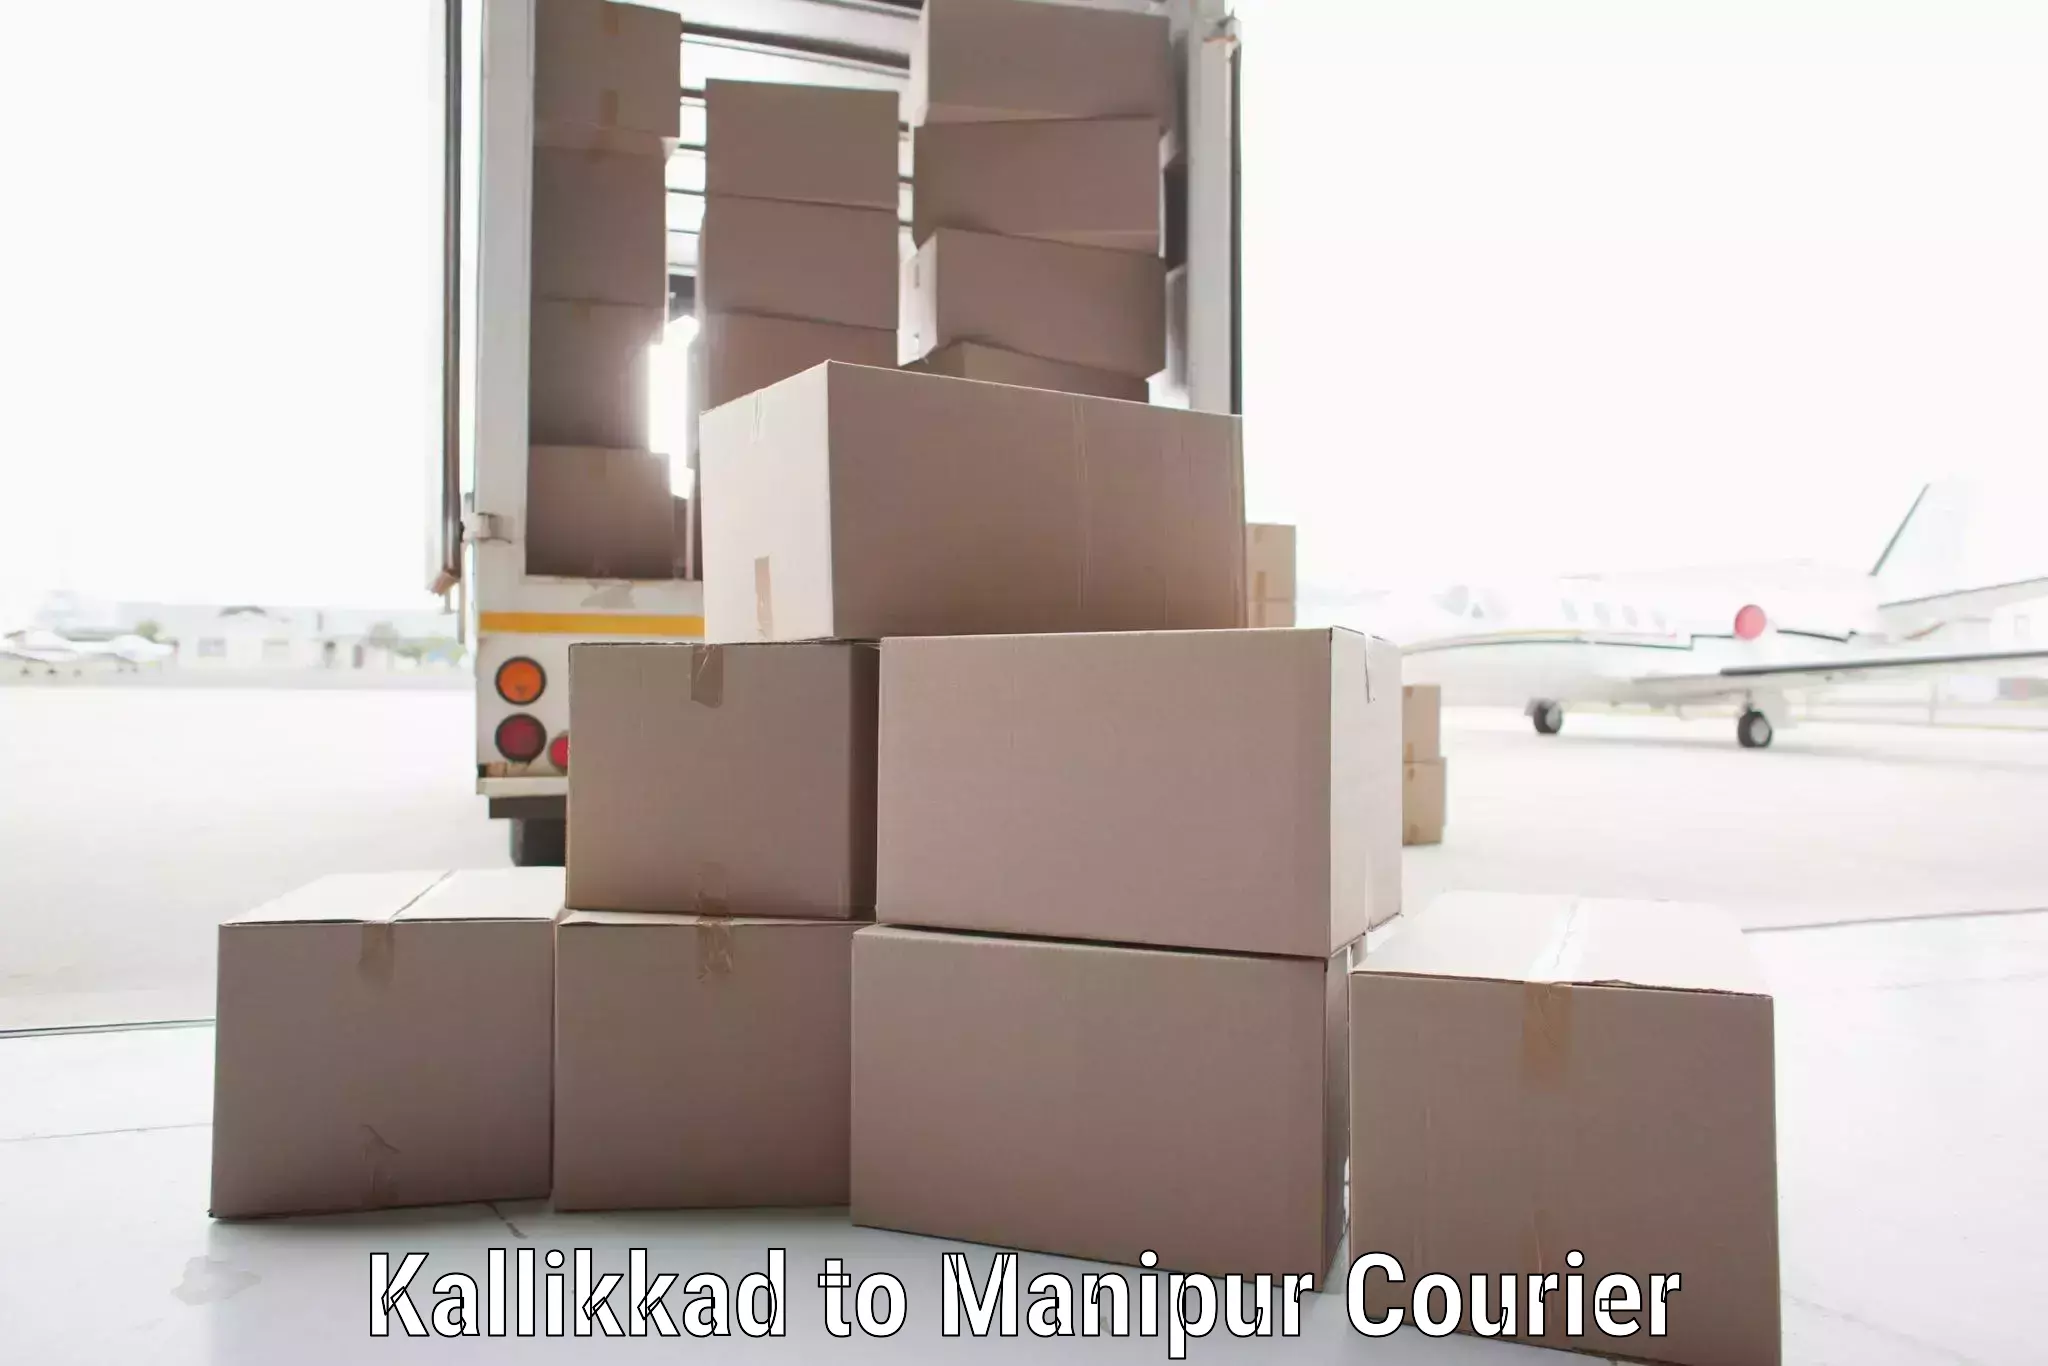 Efficient freight service Kallikkad to Manipur